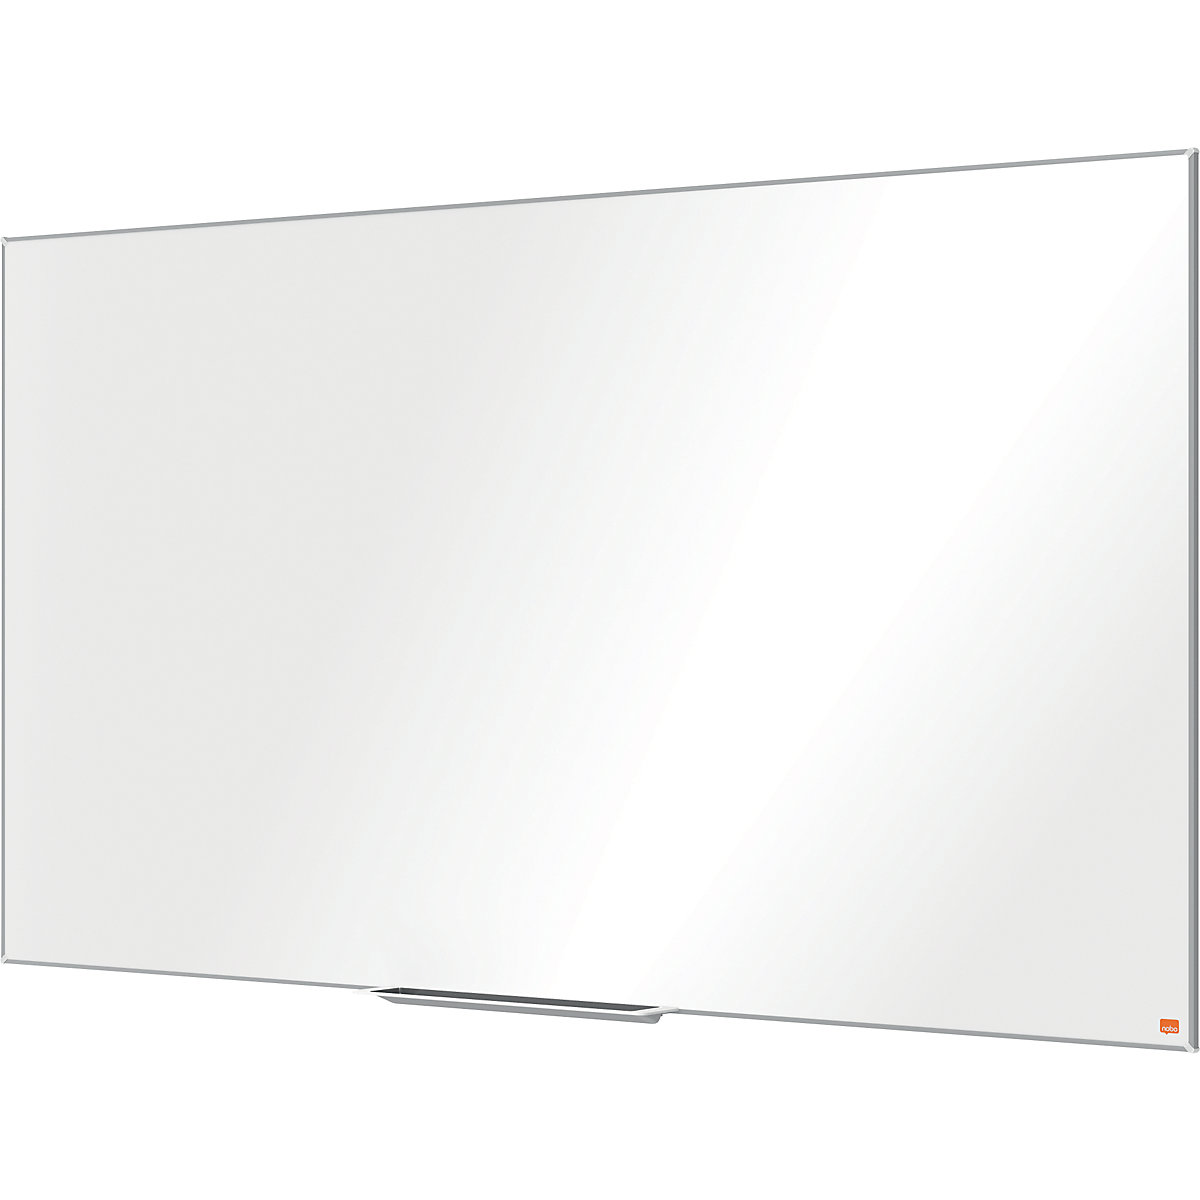 Lavagna bianca PRO – nobo, formato widescreen, acciaio smaltato, 70'', largh. x alt. 1554 x 876 mm-6